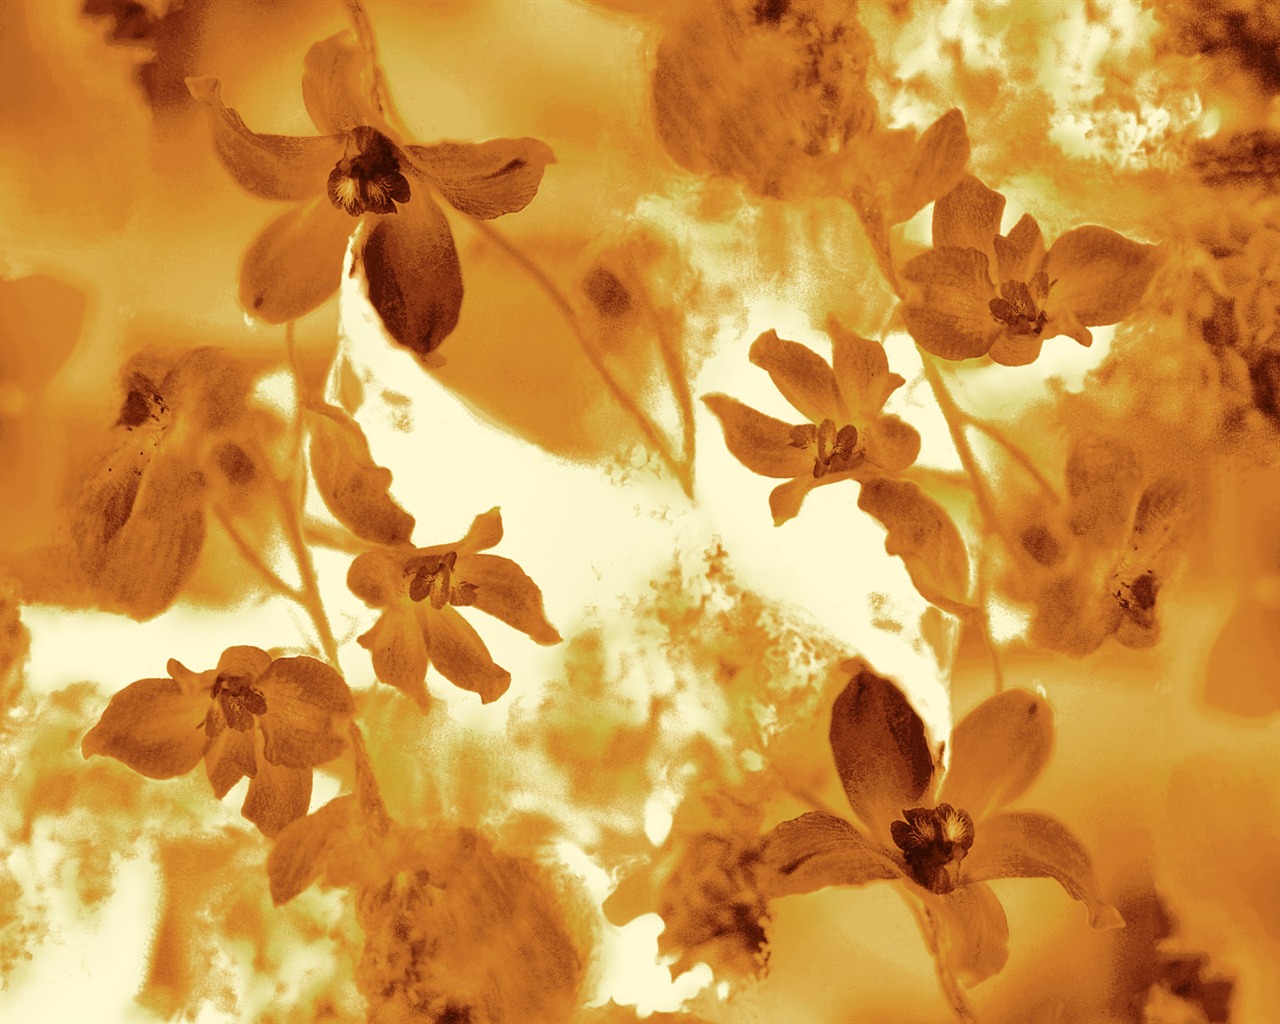 Fondos de pantalla de tinta exquisita flor #15 - 1280x1024